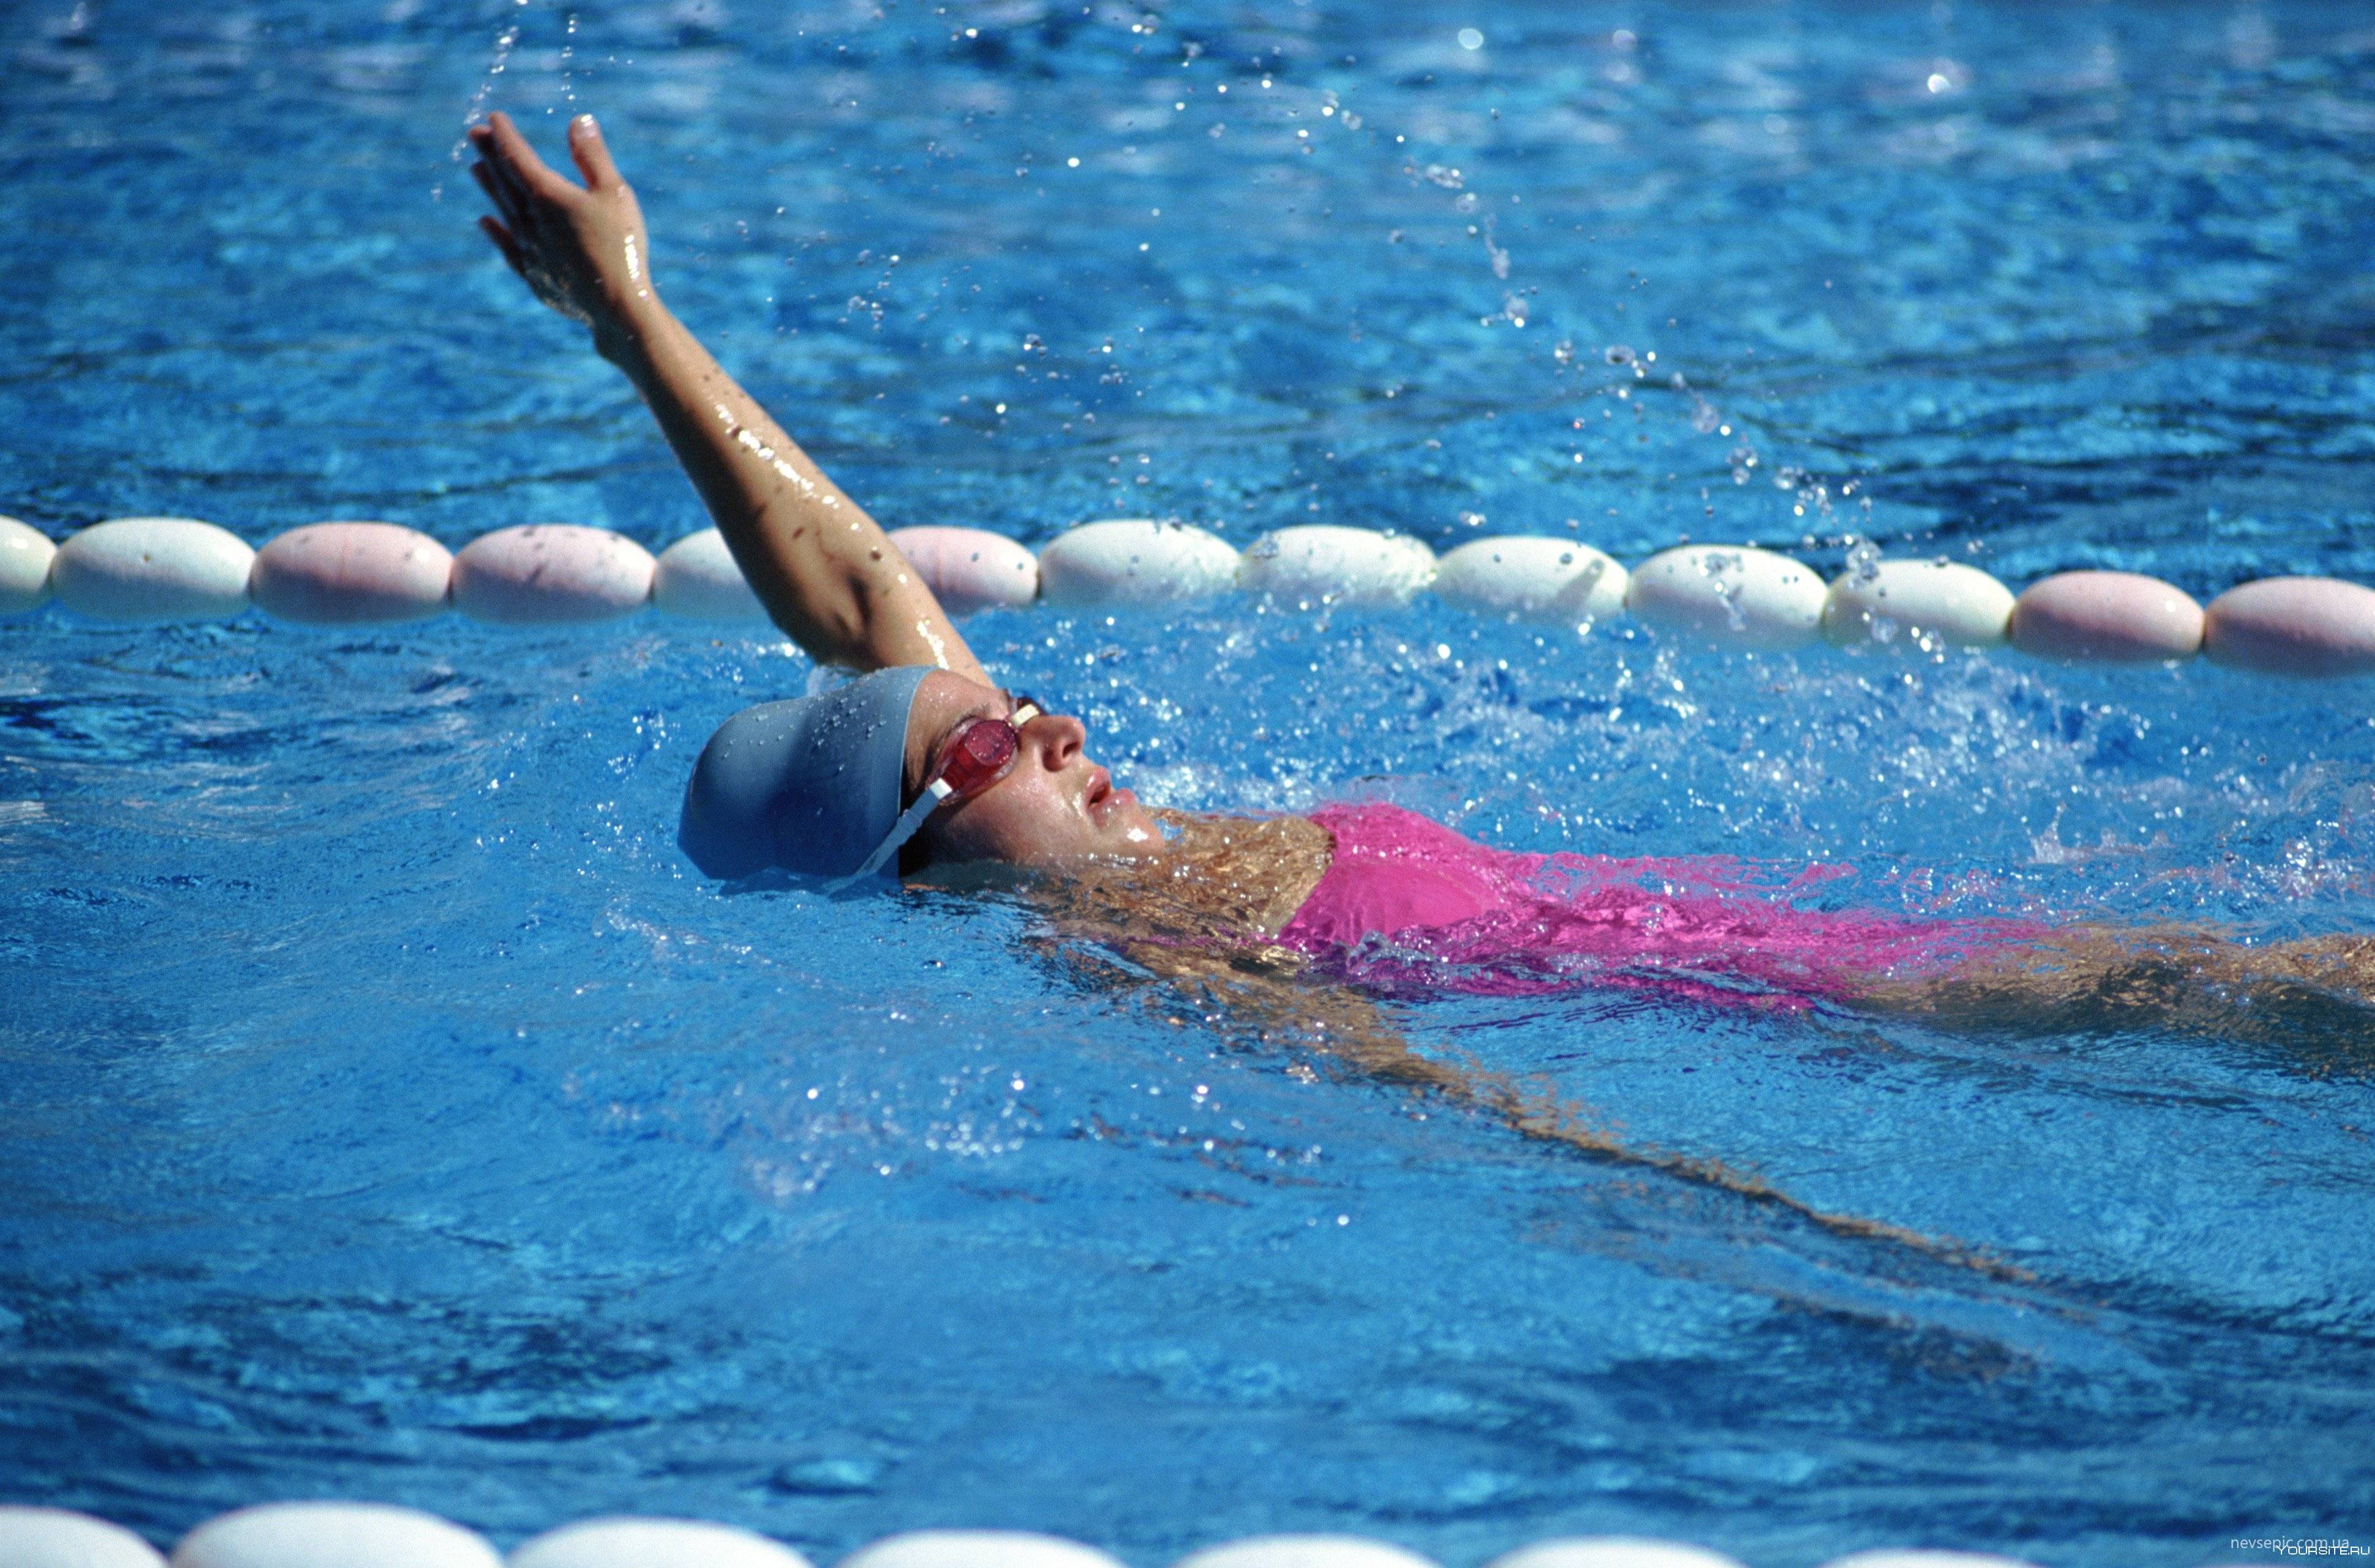 Плавание на спине: описание и виды, как правильно плавать этим стилем для позвоночника, а также нормативы, разряды, дистанция и правила соревнований